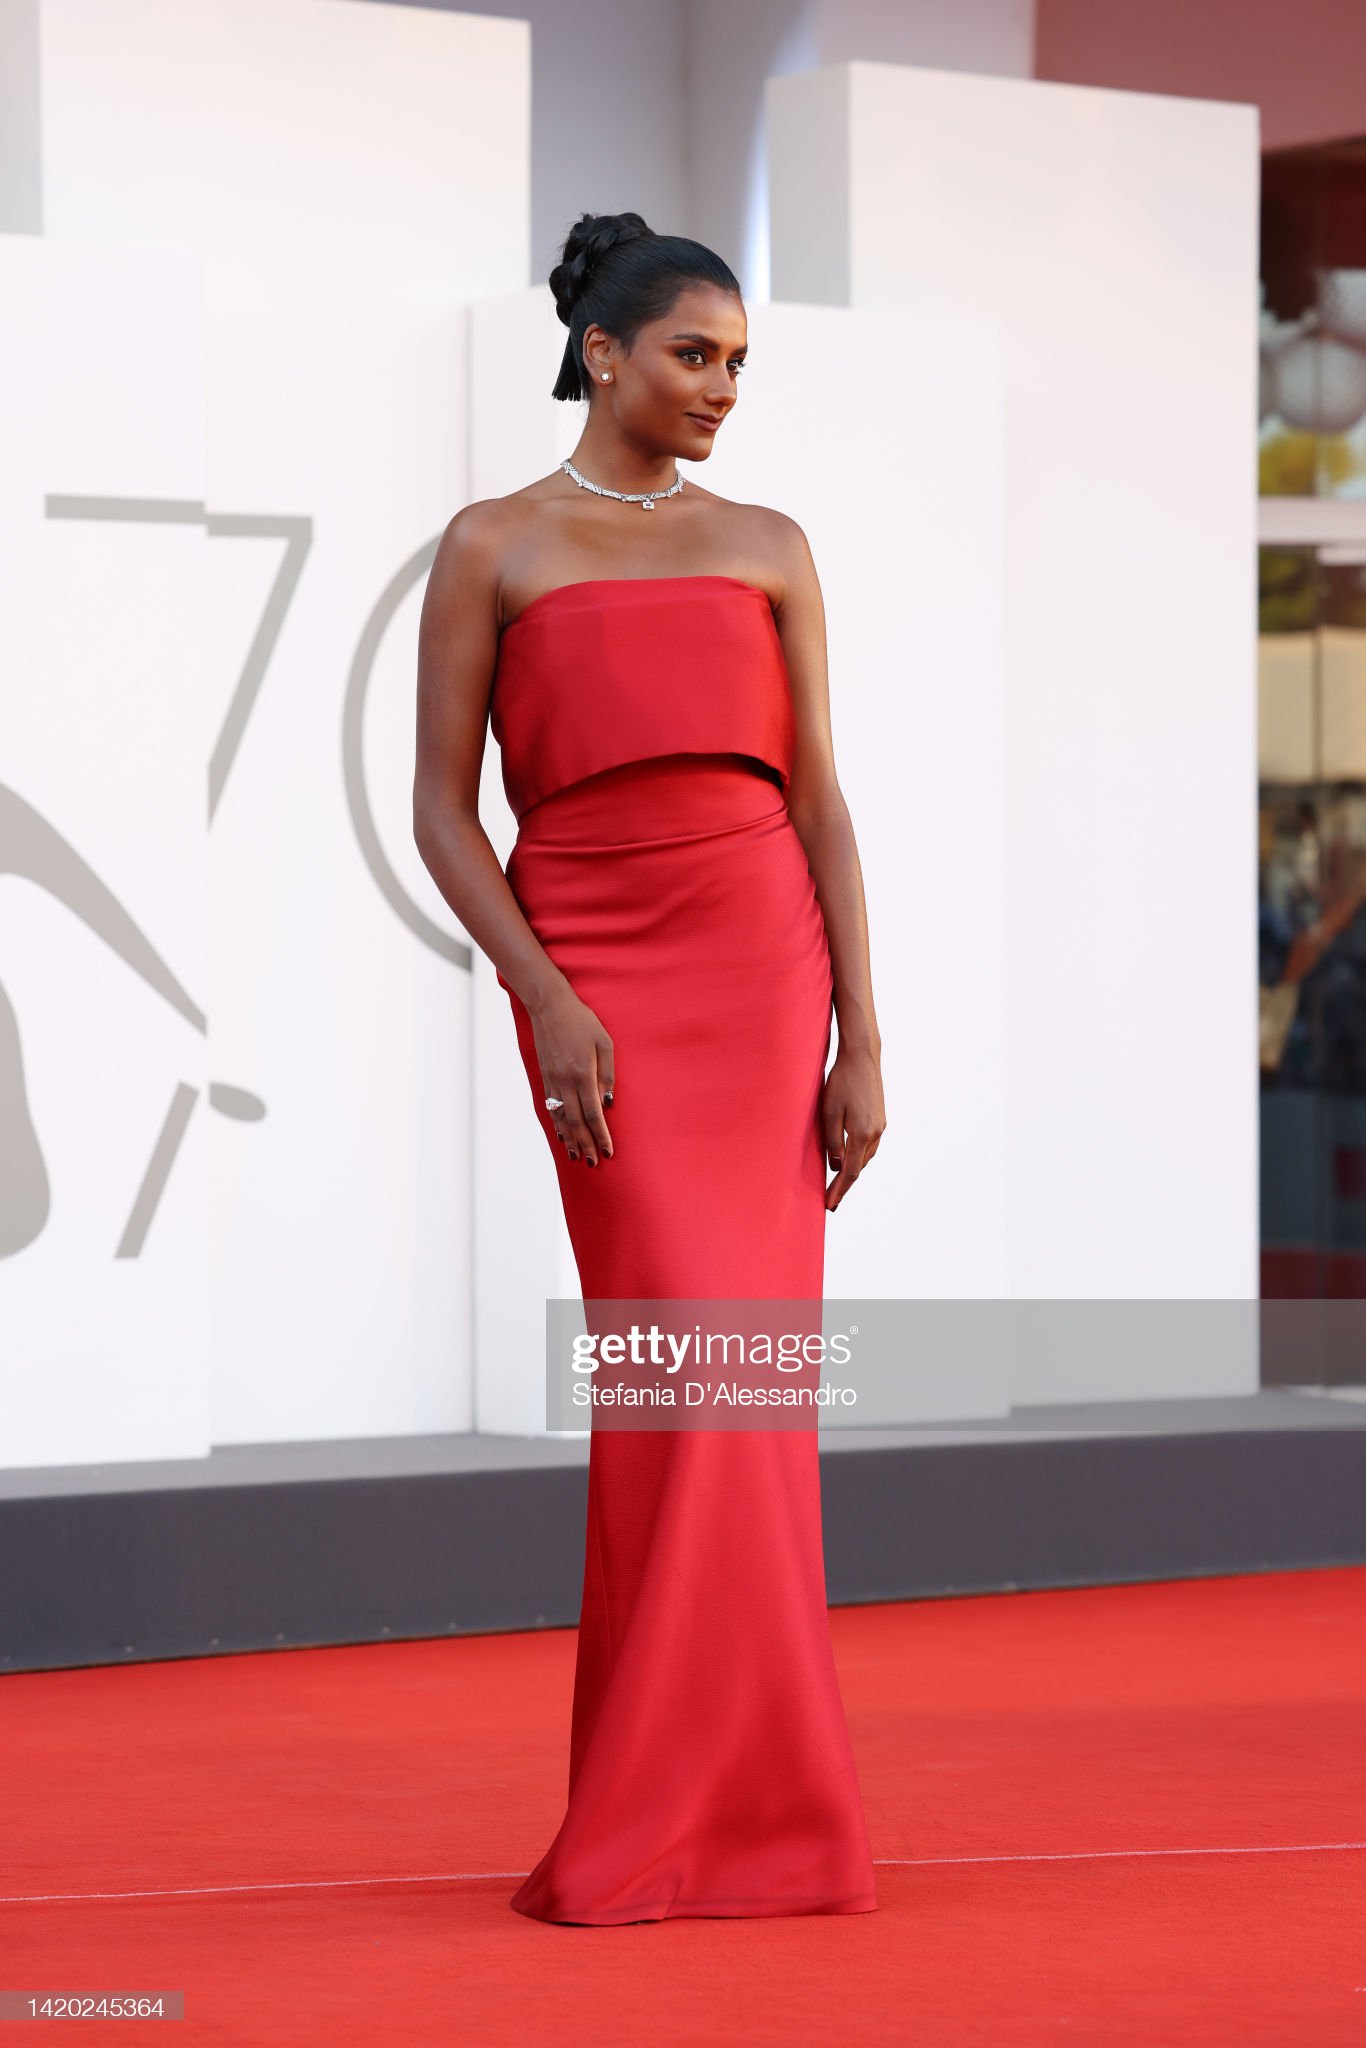 Diễn viên người Anh, Simone Ashley có mặt trên thảm đỏ trong trang phục đỏ rạng rỡ